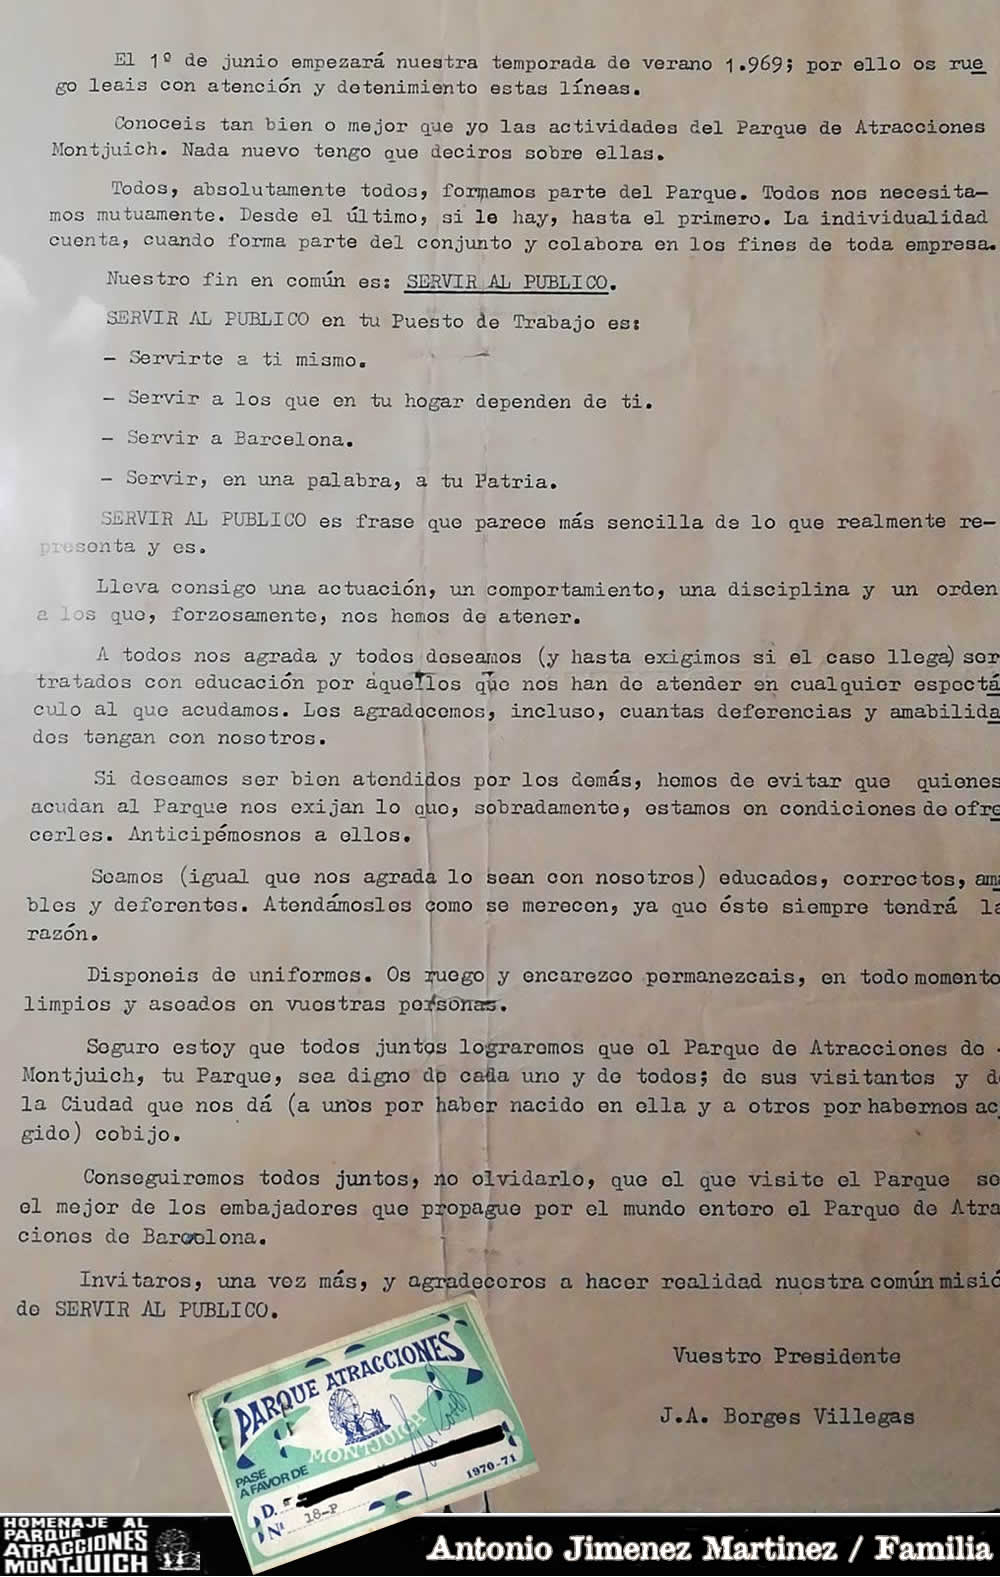 Documento interno de 1969 del presidente del Parque de Atracciones de Montjuich